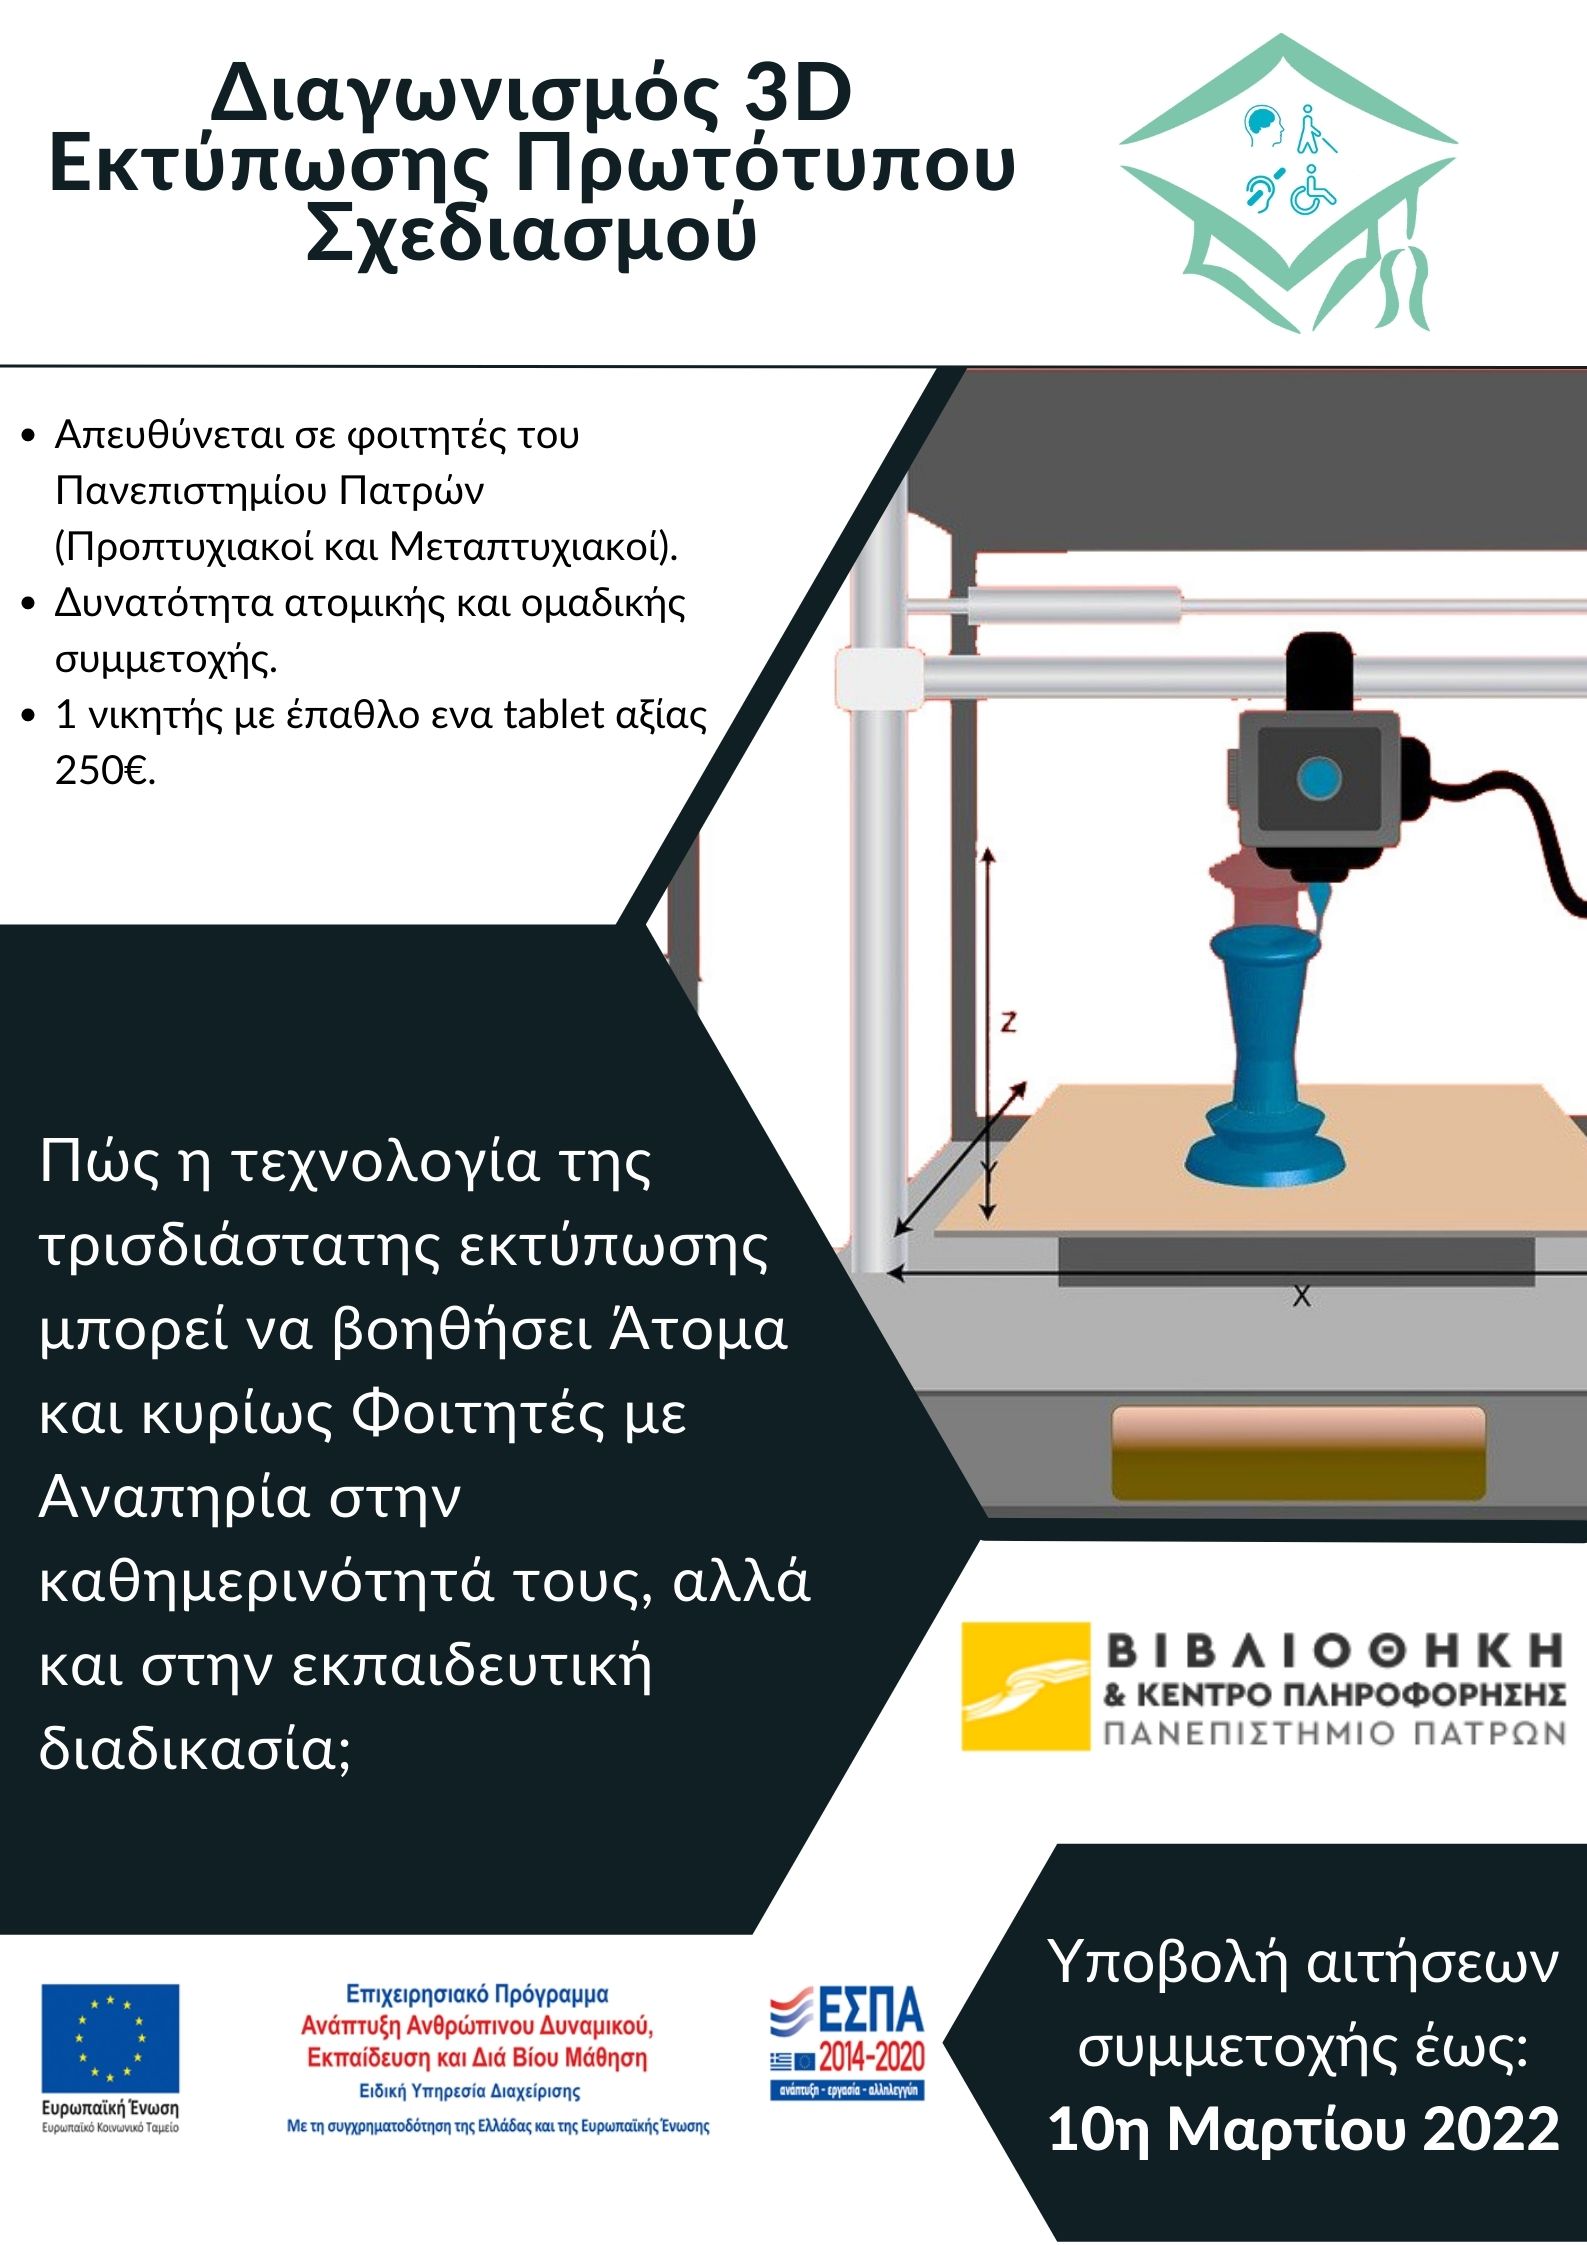 Αφίσα για το διαγωνισμό 3D Printing